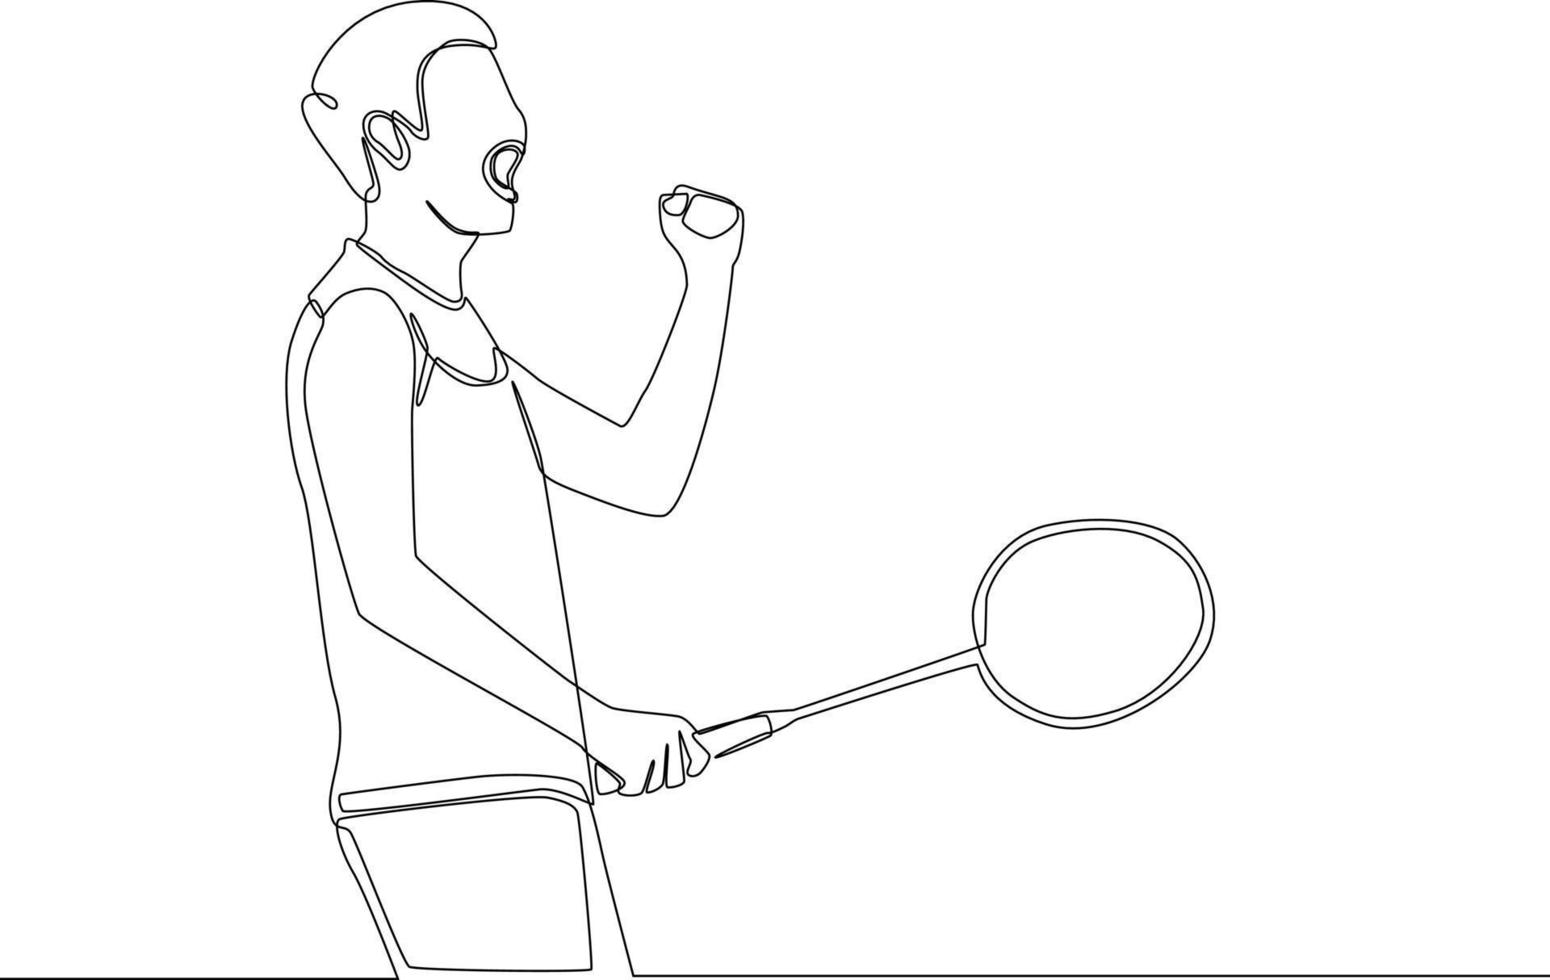 kontinuierlich eine Linie, die einen jungen Mann zeichnet, nachdem er Badminton gespielt hat und als Sieger gestanden hat. einzeiliges zeichnen design vektorgrafik illustration. vektor